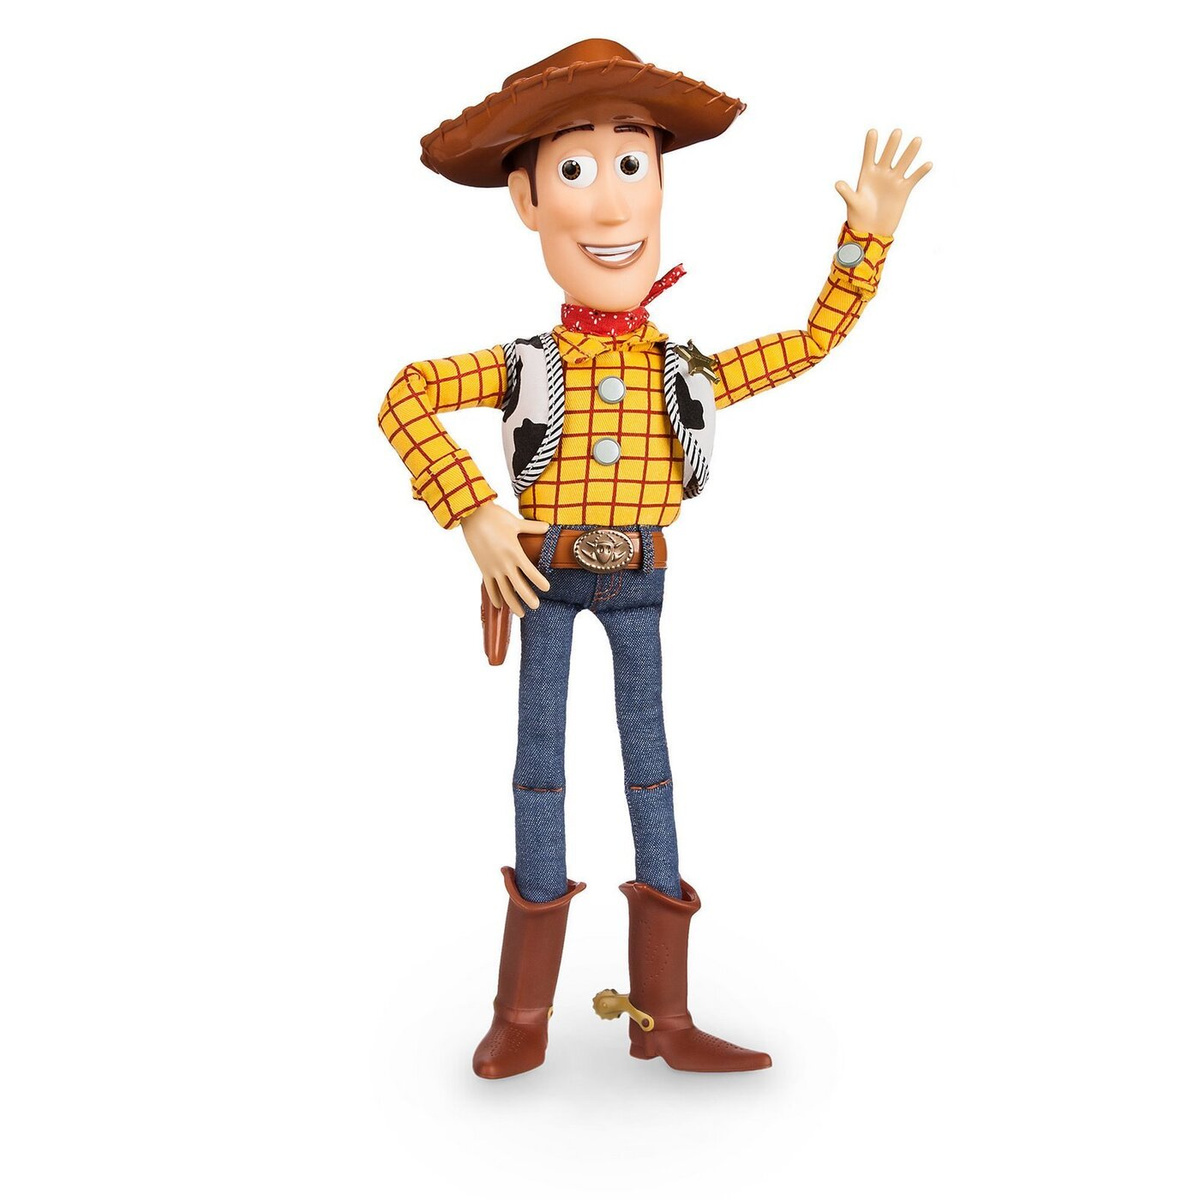 Фигурка История игрушек Toy Story Вуди ковбой 43 см кукла история игрушек шериф вуди со шляпой toy story говорящая 40 см